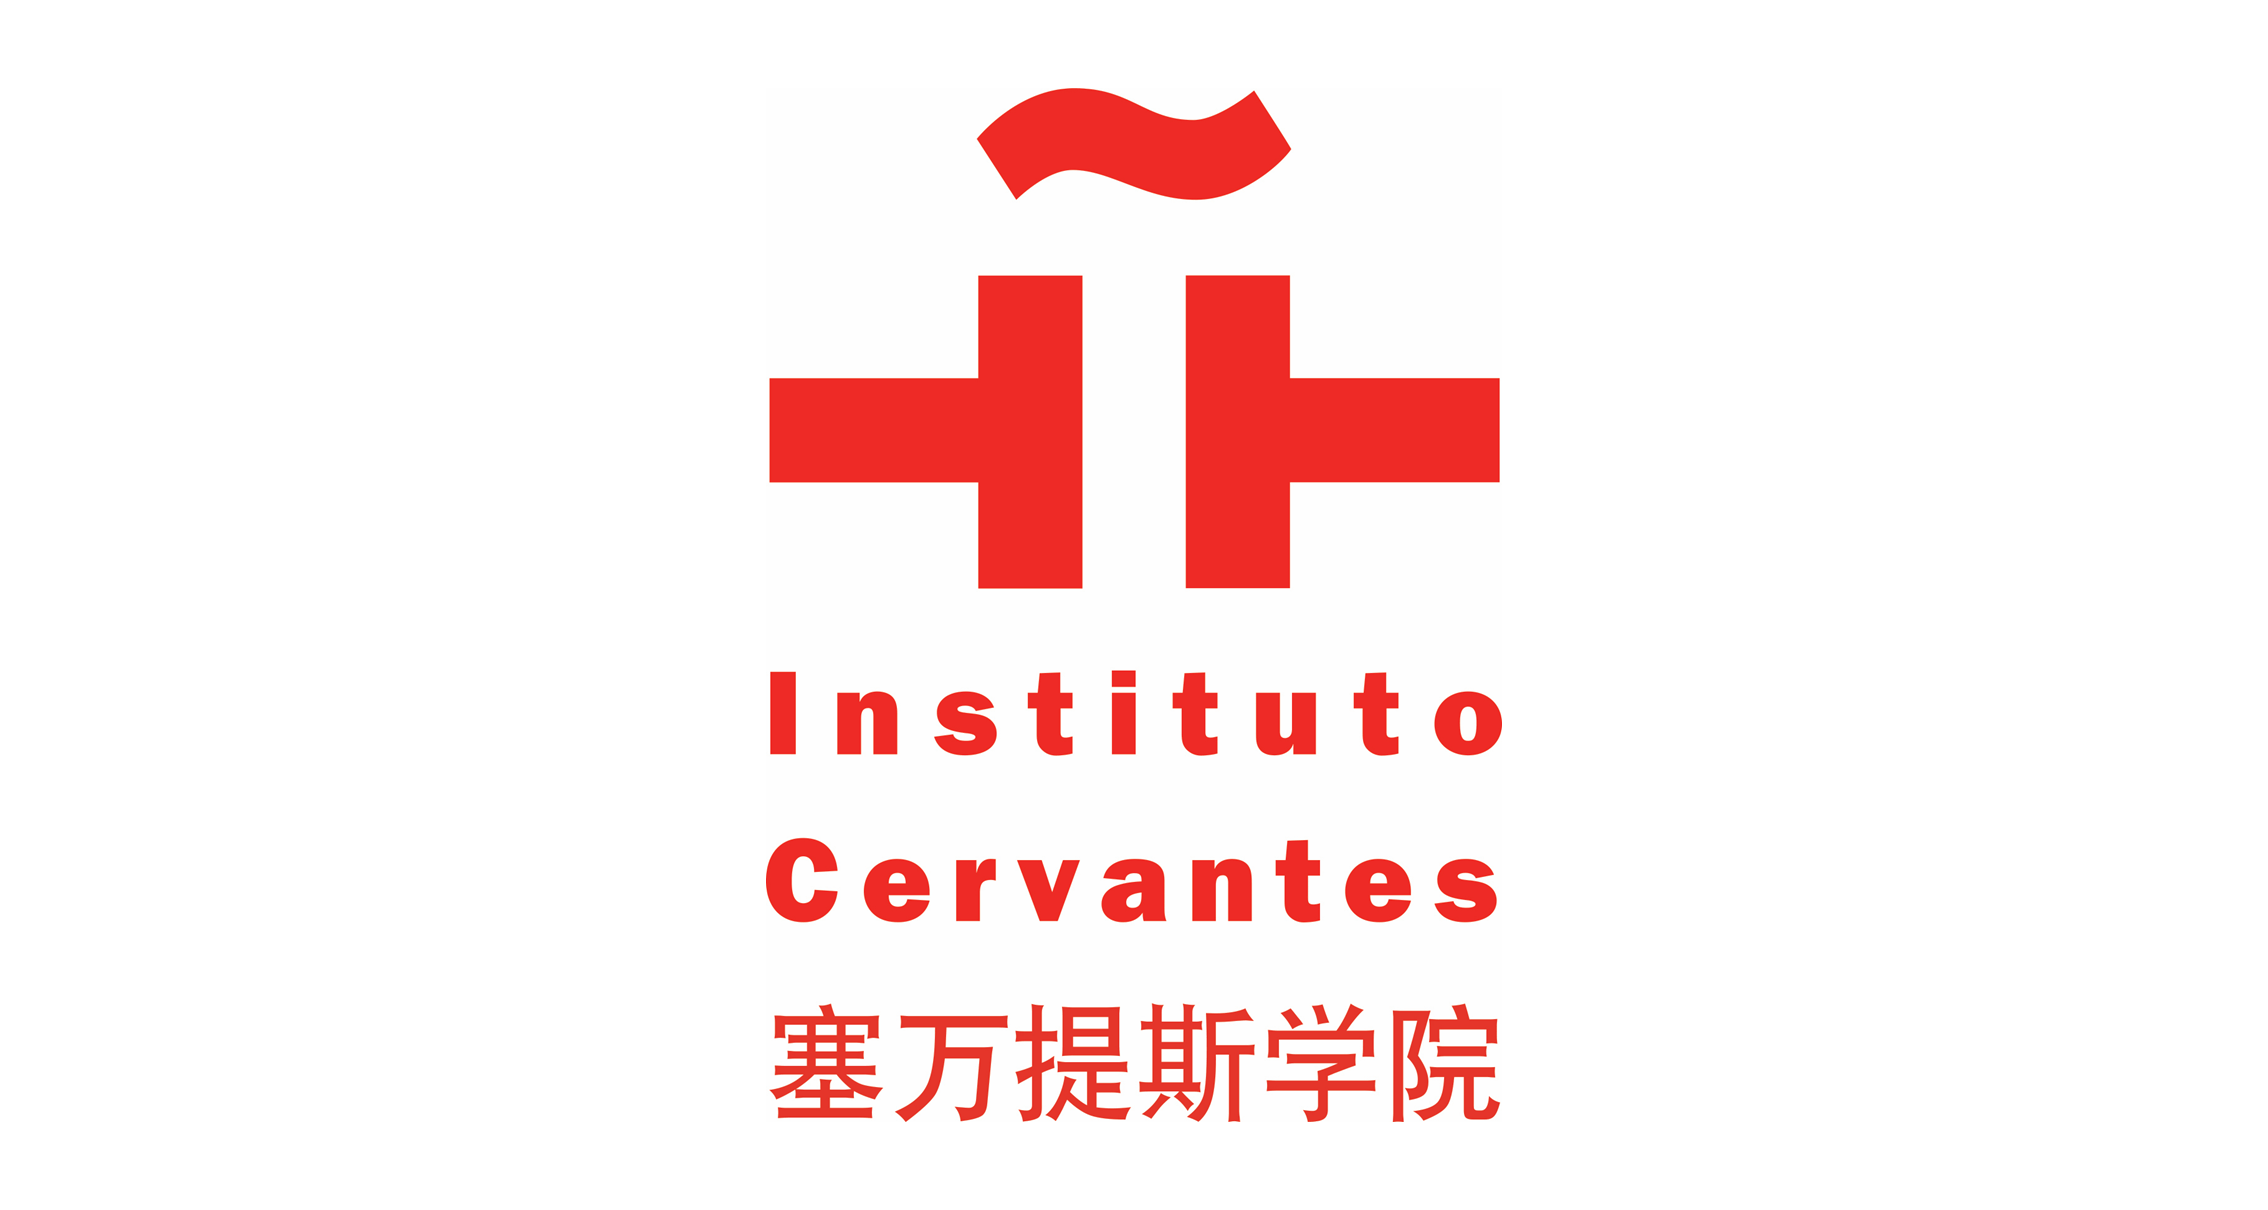 塞万提斯图书馆 Cervantes by Spanish Consulate